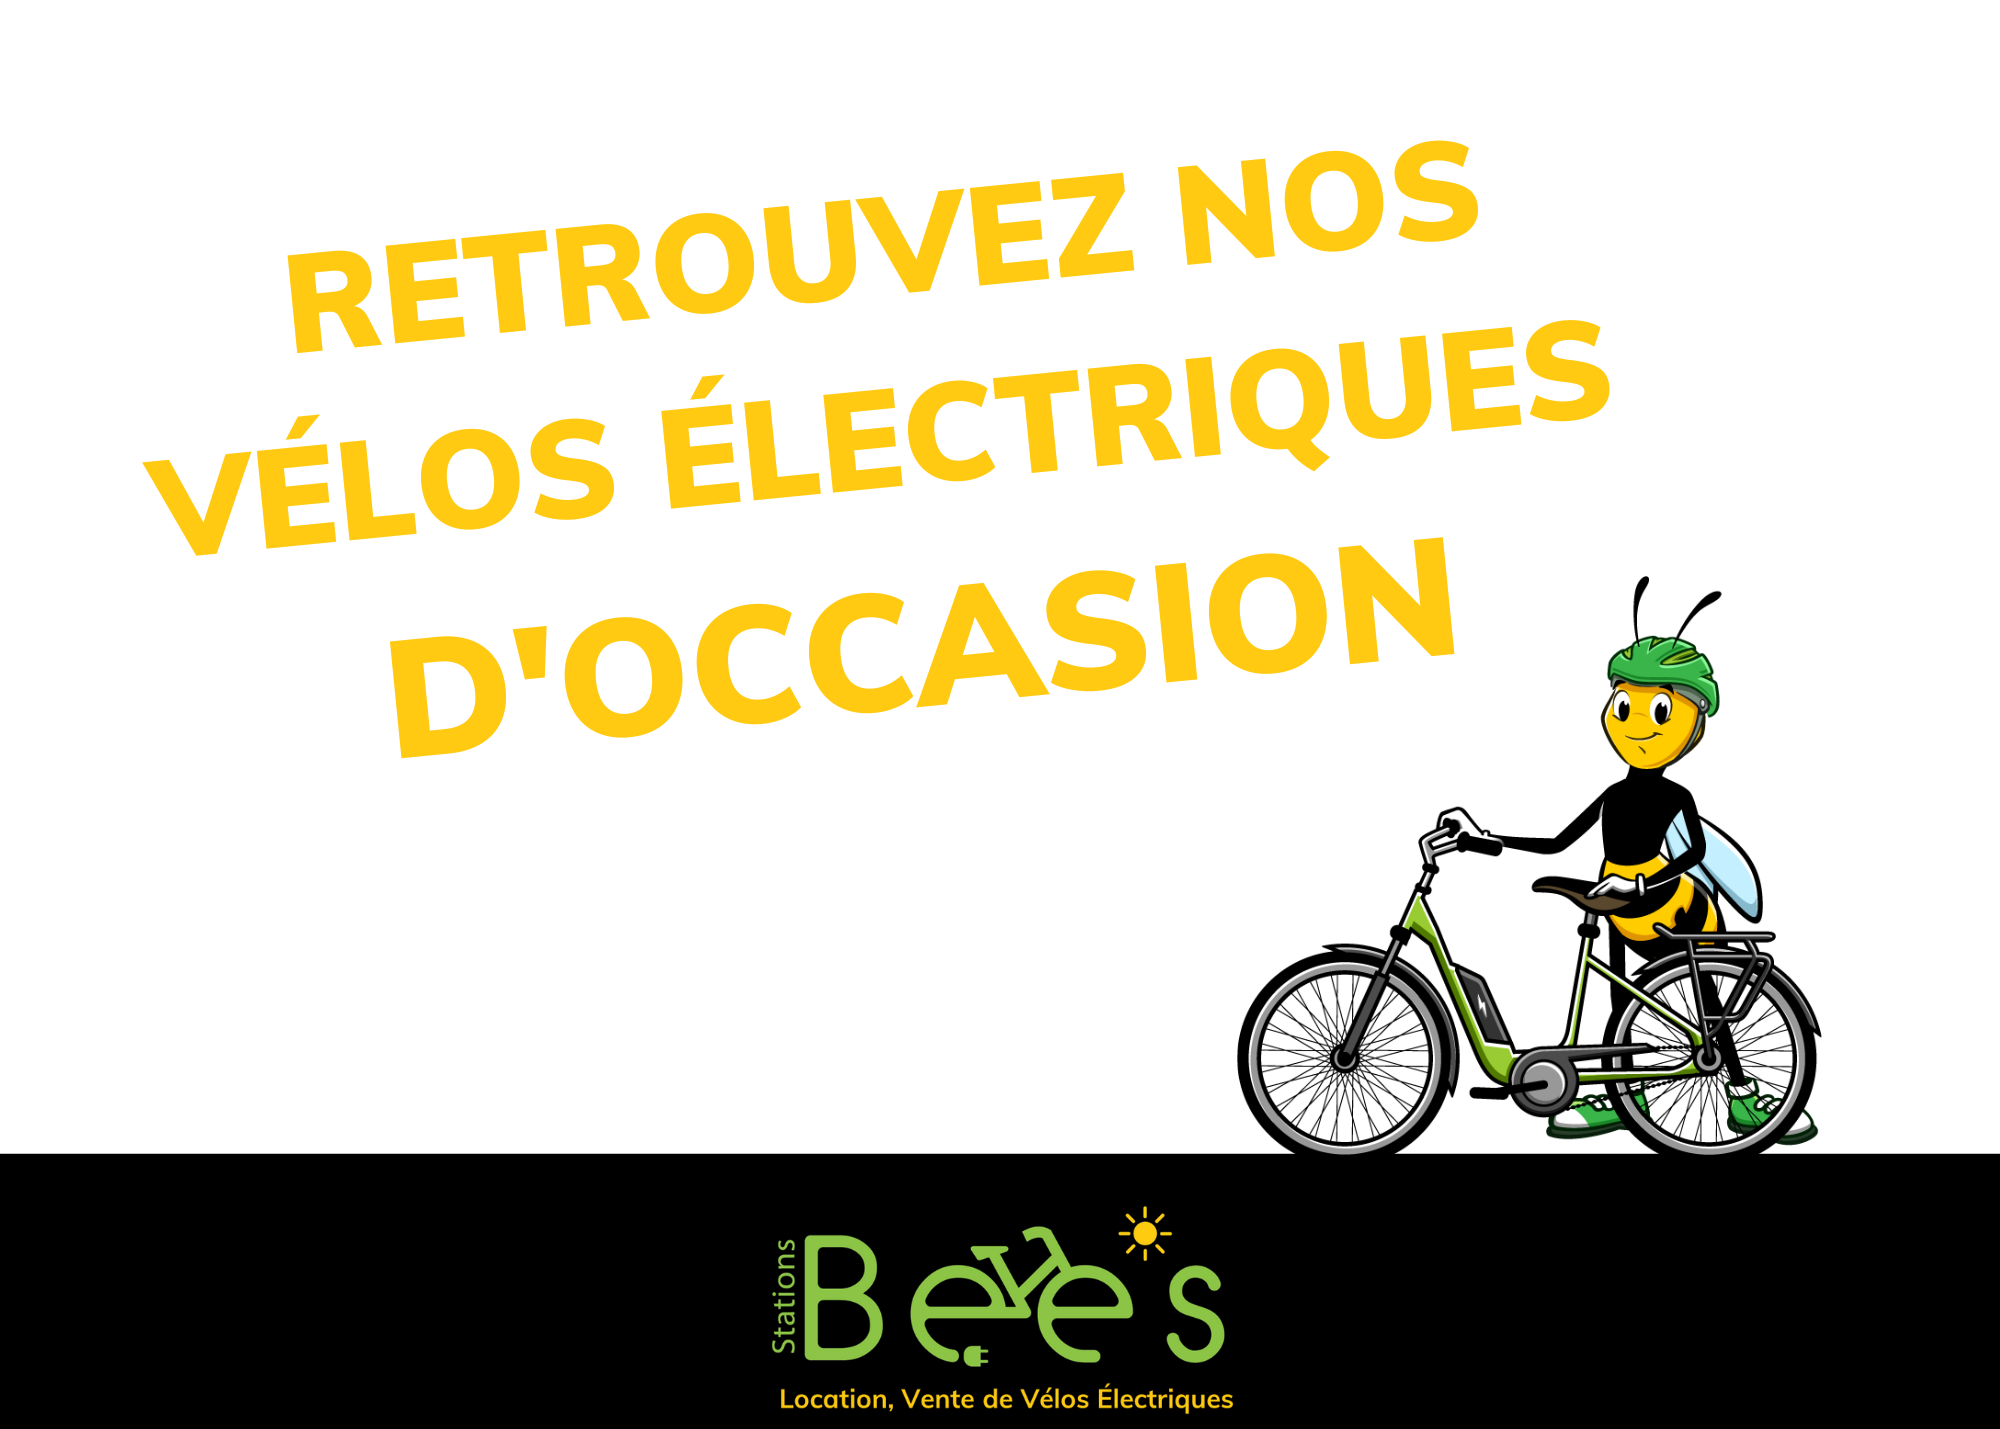 Retrouvez les vélos électriques d'occasion BEES !